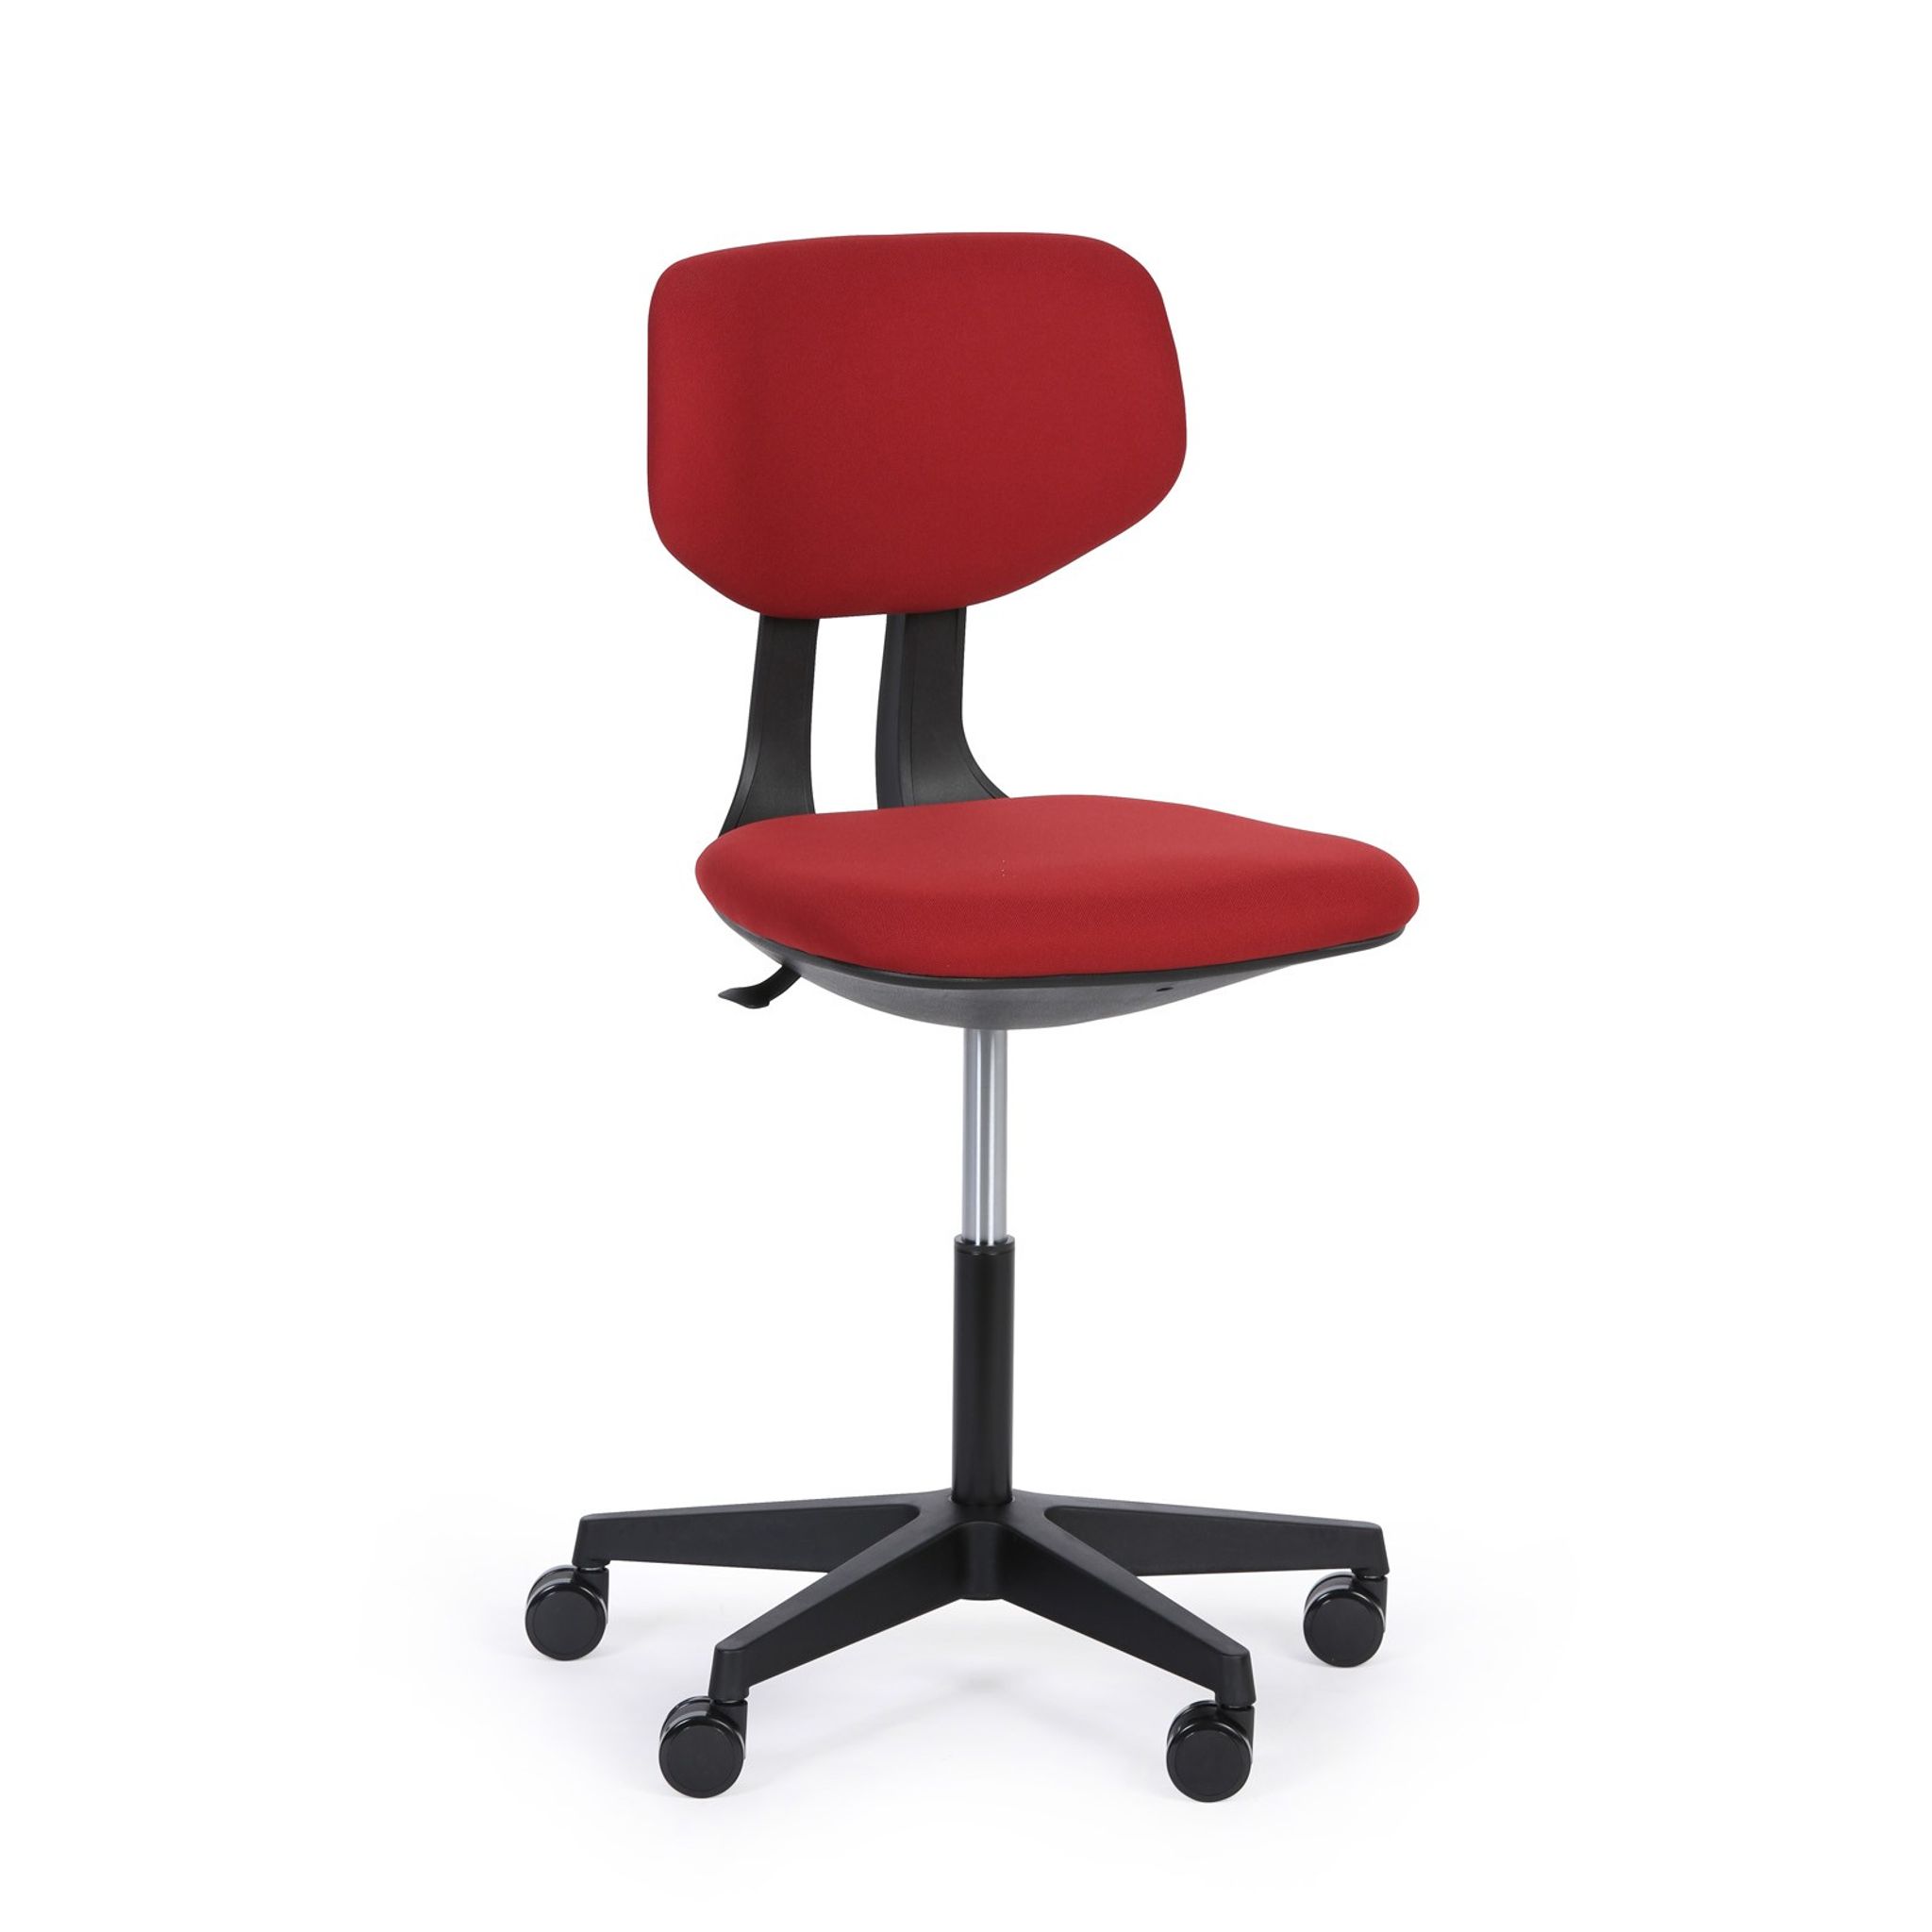 Pracovní židle RON, červená